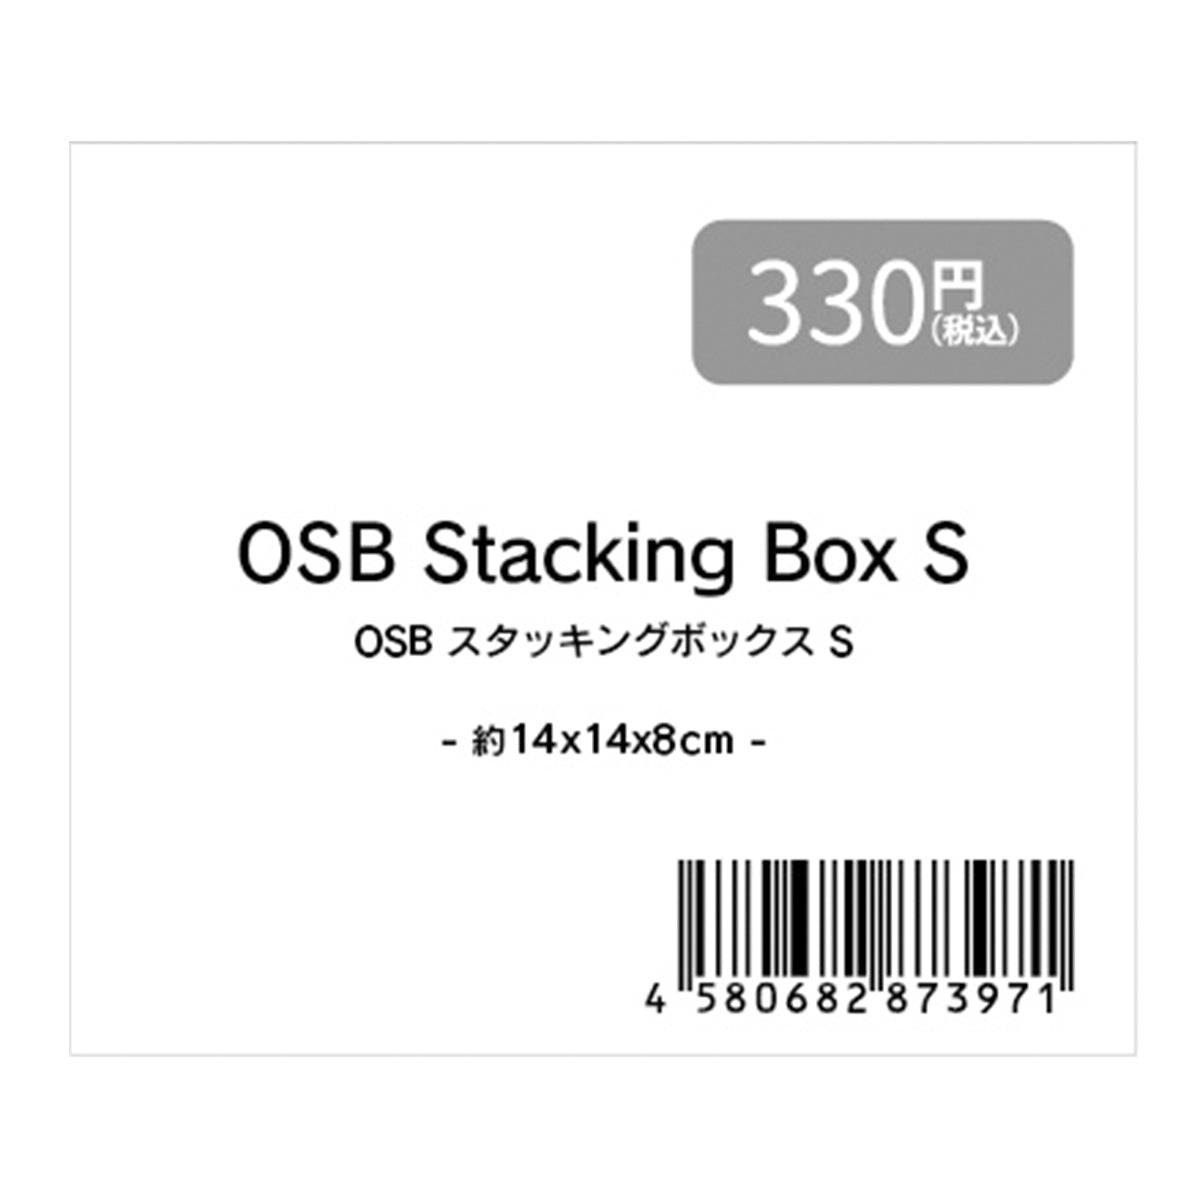 収納ボックス 小物ケース ナチュラル OSBスタッキングボックス S 約14x14x8cm 1523/353366